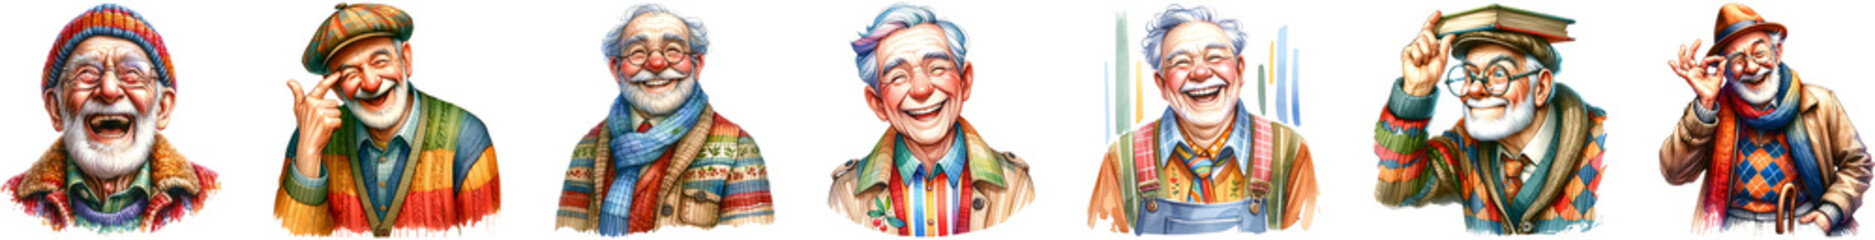 Grandpa happy funny, watercolor illustration.